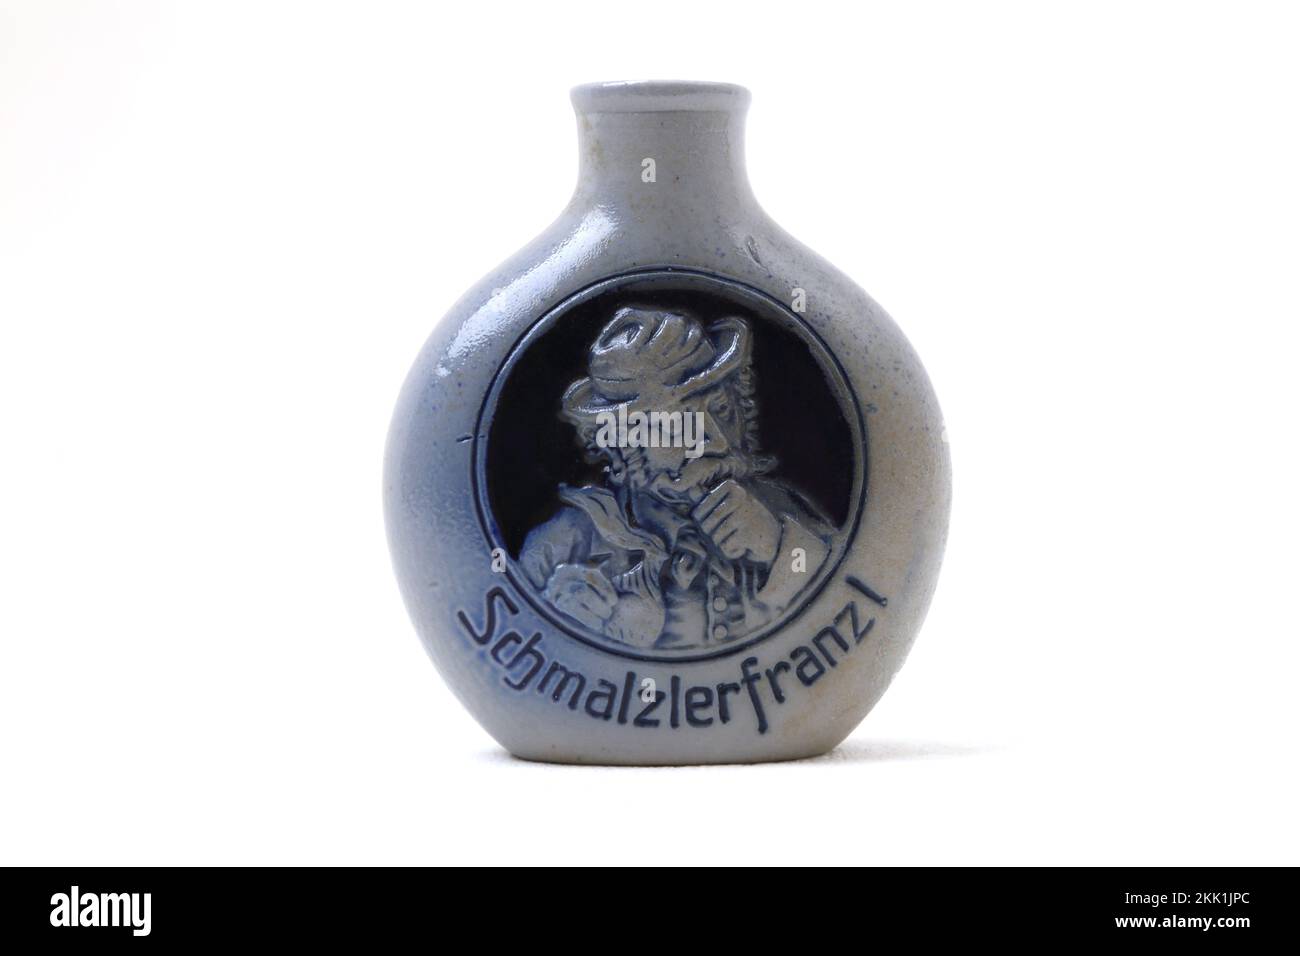 Schmalzlerfranzl Regensburg – Miniatur-Töpferflasche Im Deutschen Vintage-Stil Stockfoto